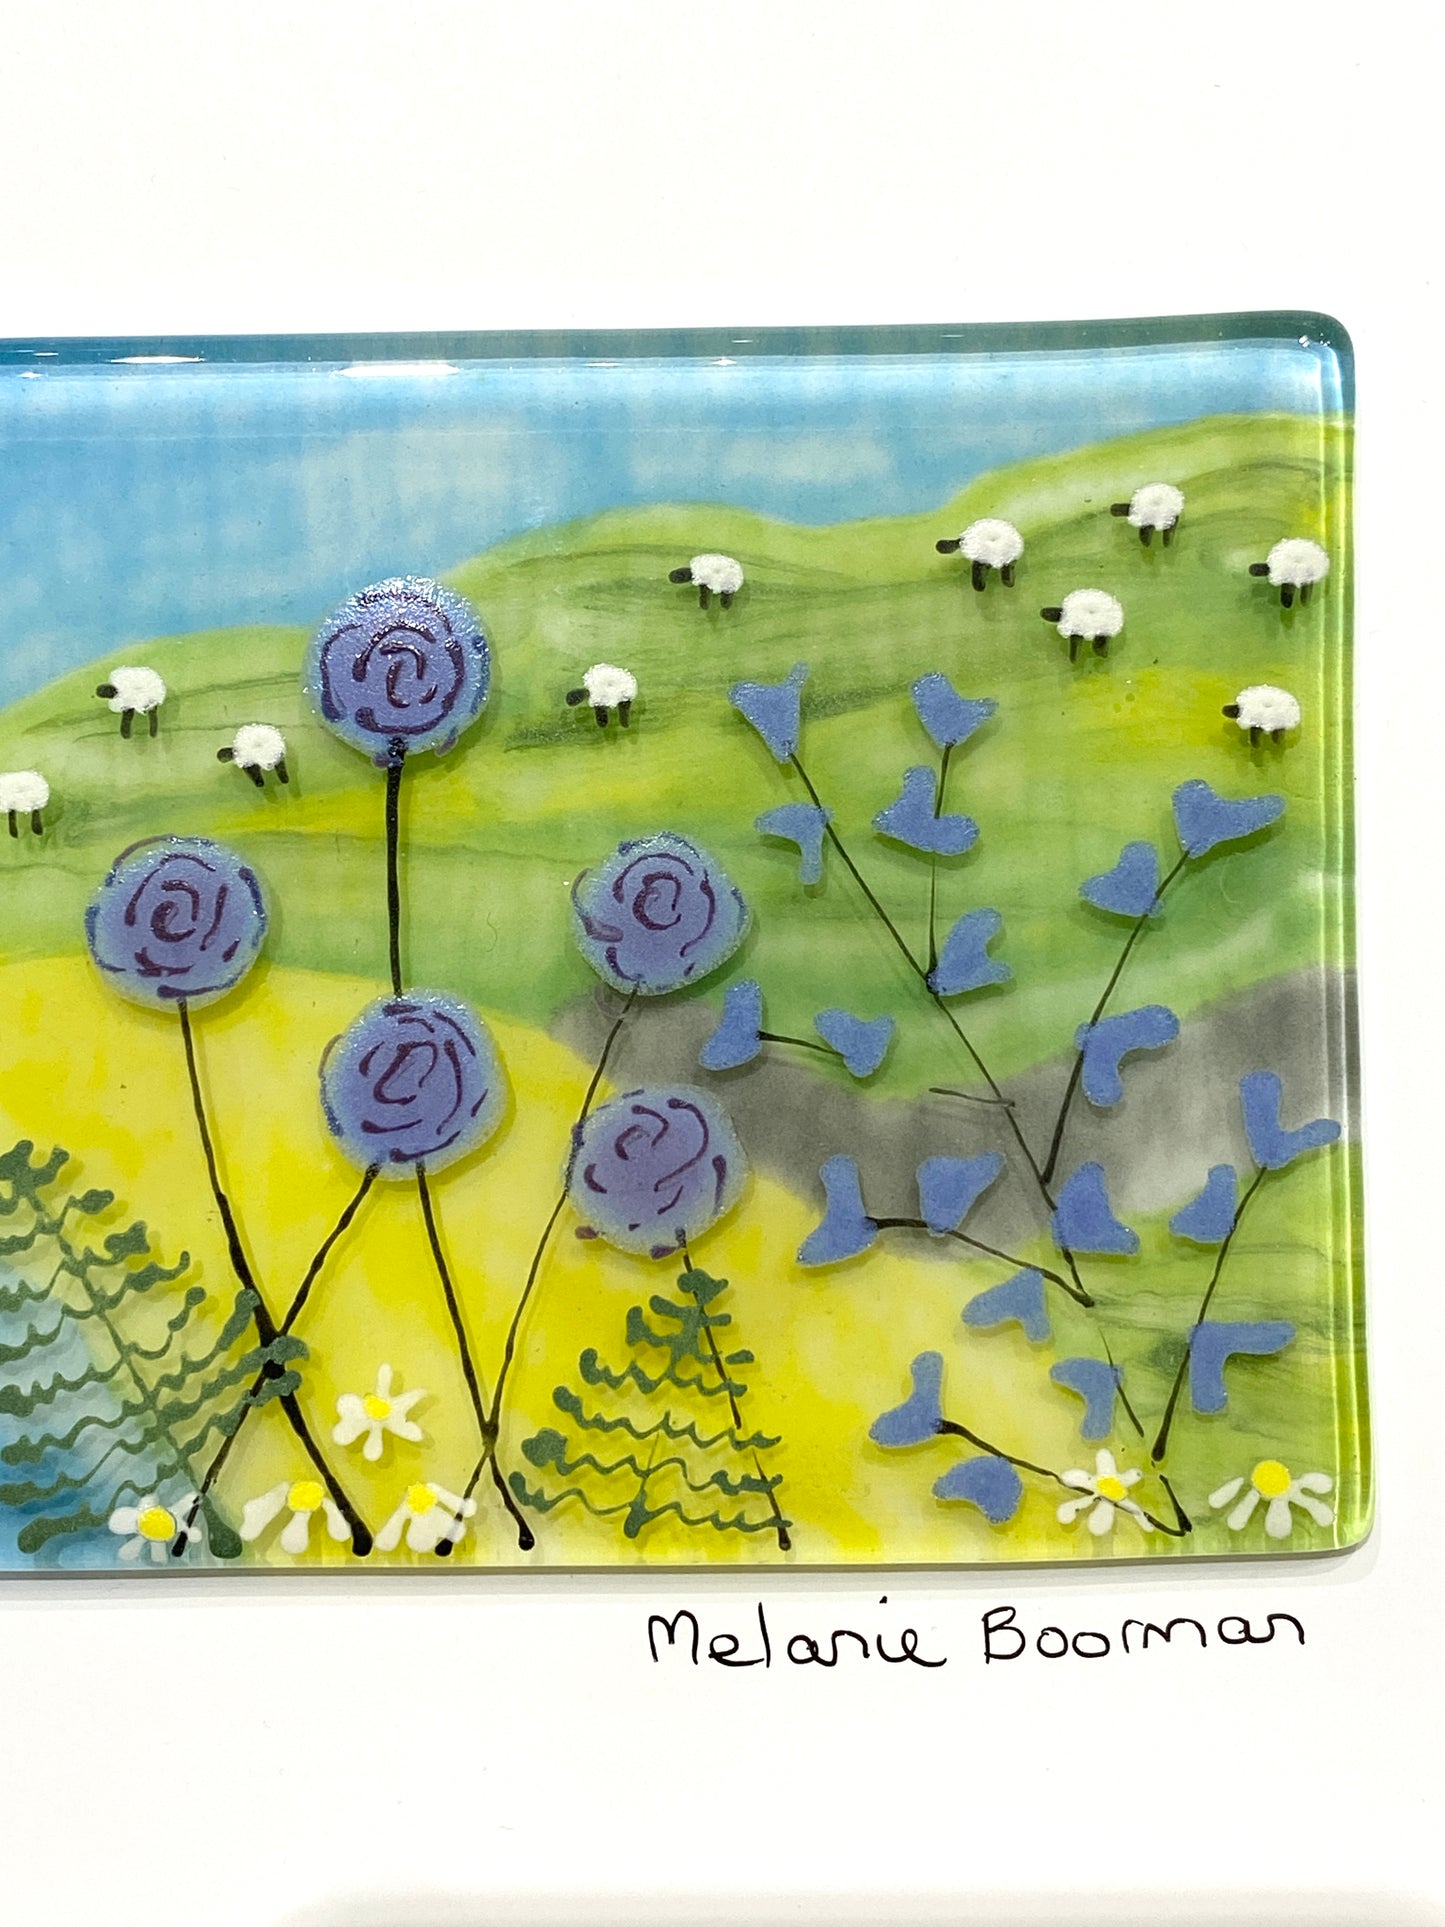 Melanie Boorman Blue Bay